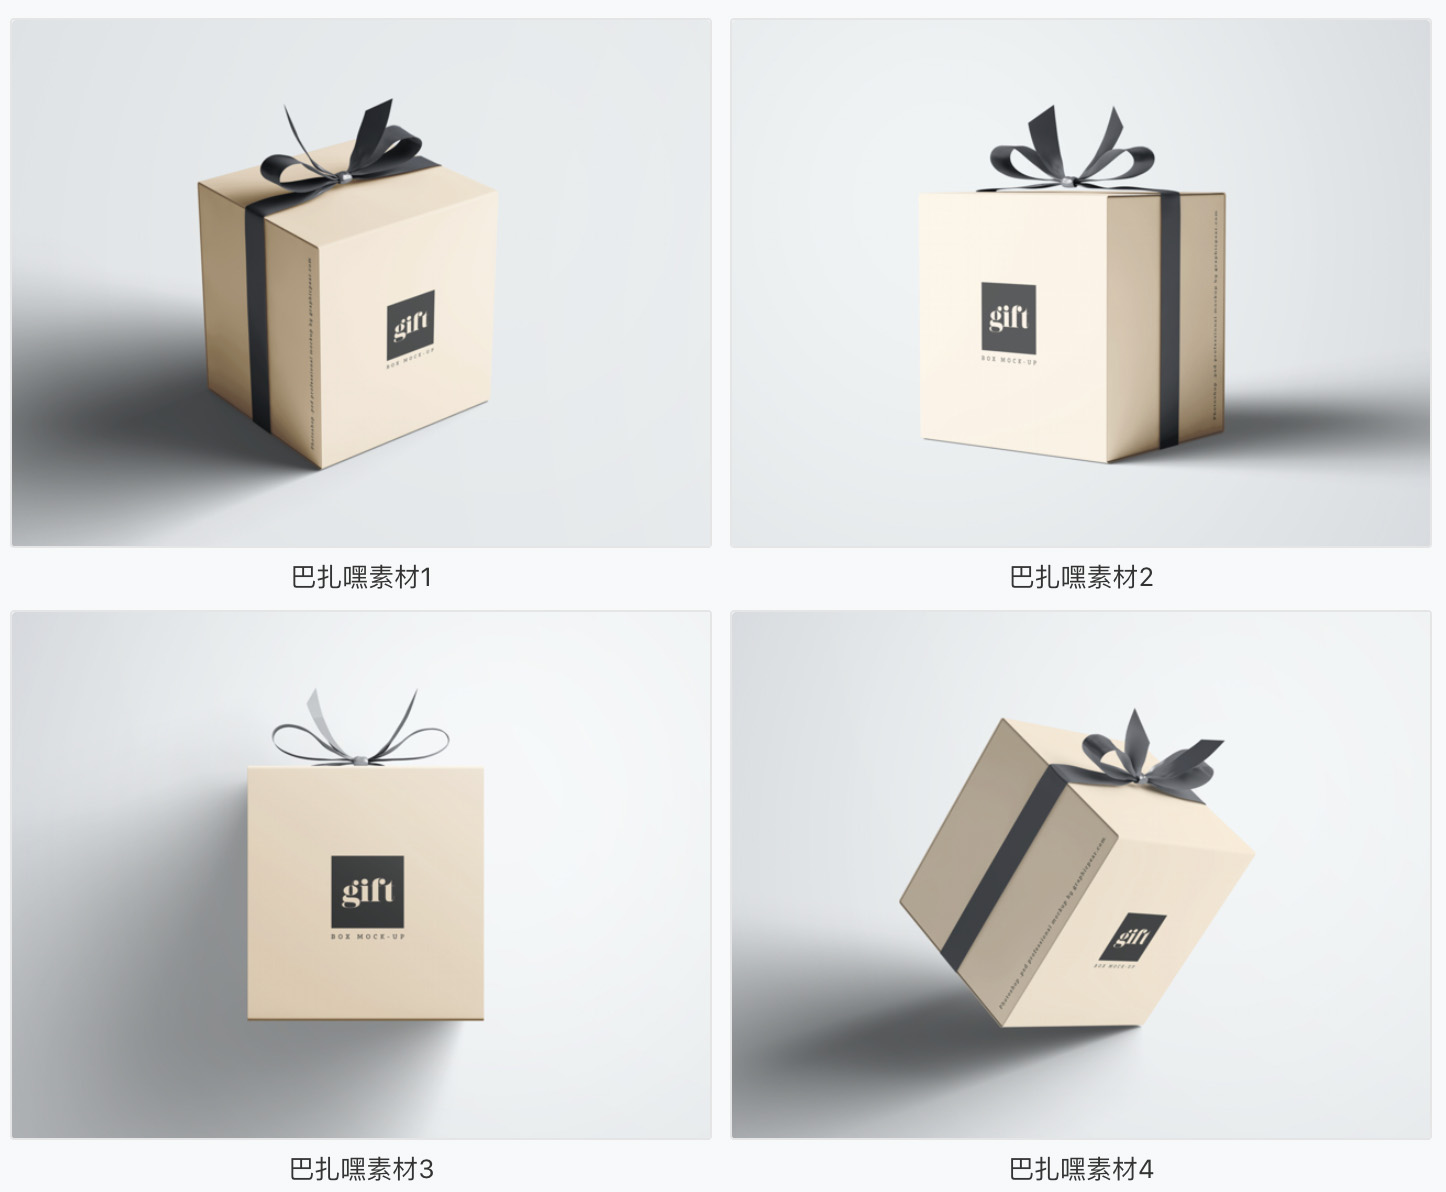 【礼盒样机】礼品包装盒智能贴图样机VI礼物文创展示效果图